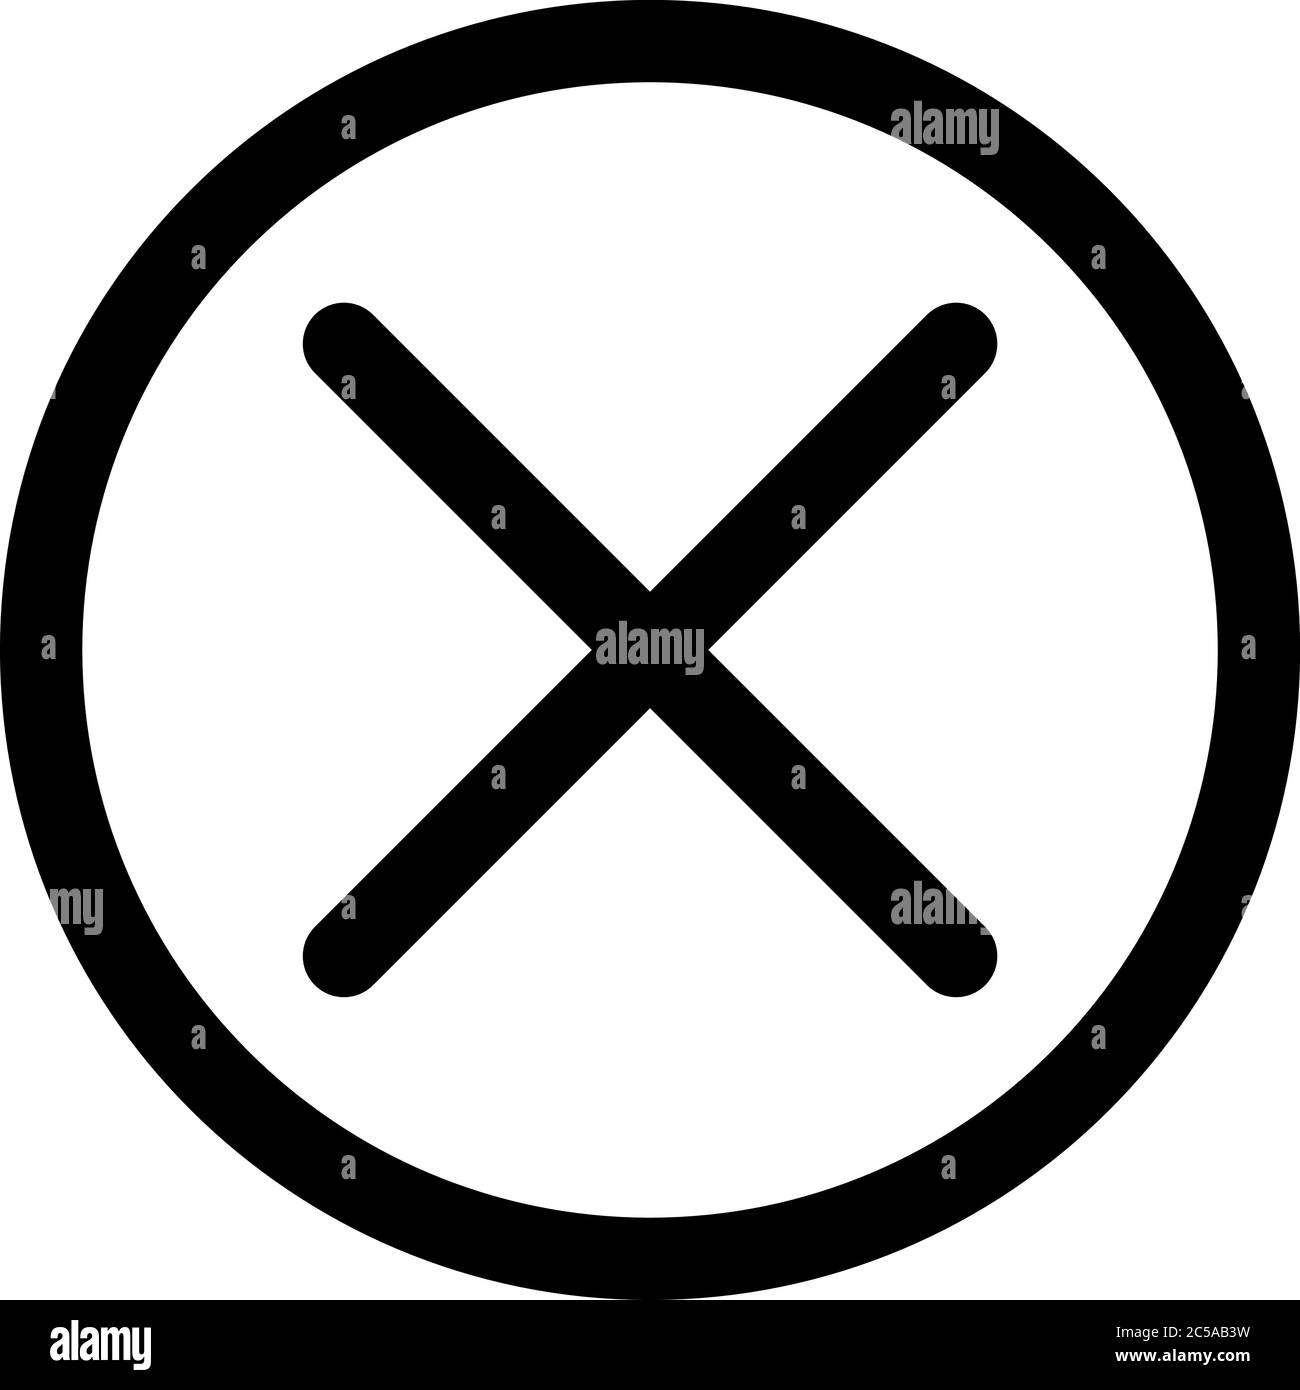 Kreuz in das Kreissymbol. Symbol für „Schließen“, „Verleugnen“ oder „falsch“. Umreißen Sie modernes Design-Element. Einfaches schwarzes flaches Vektorzeichen mit abgerundeten Ecken. Stock Vektor